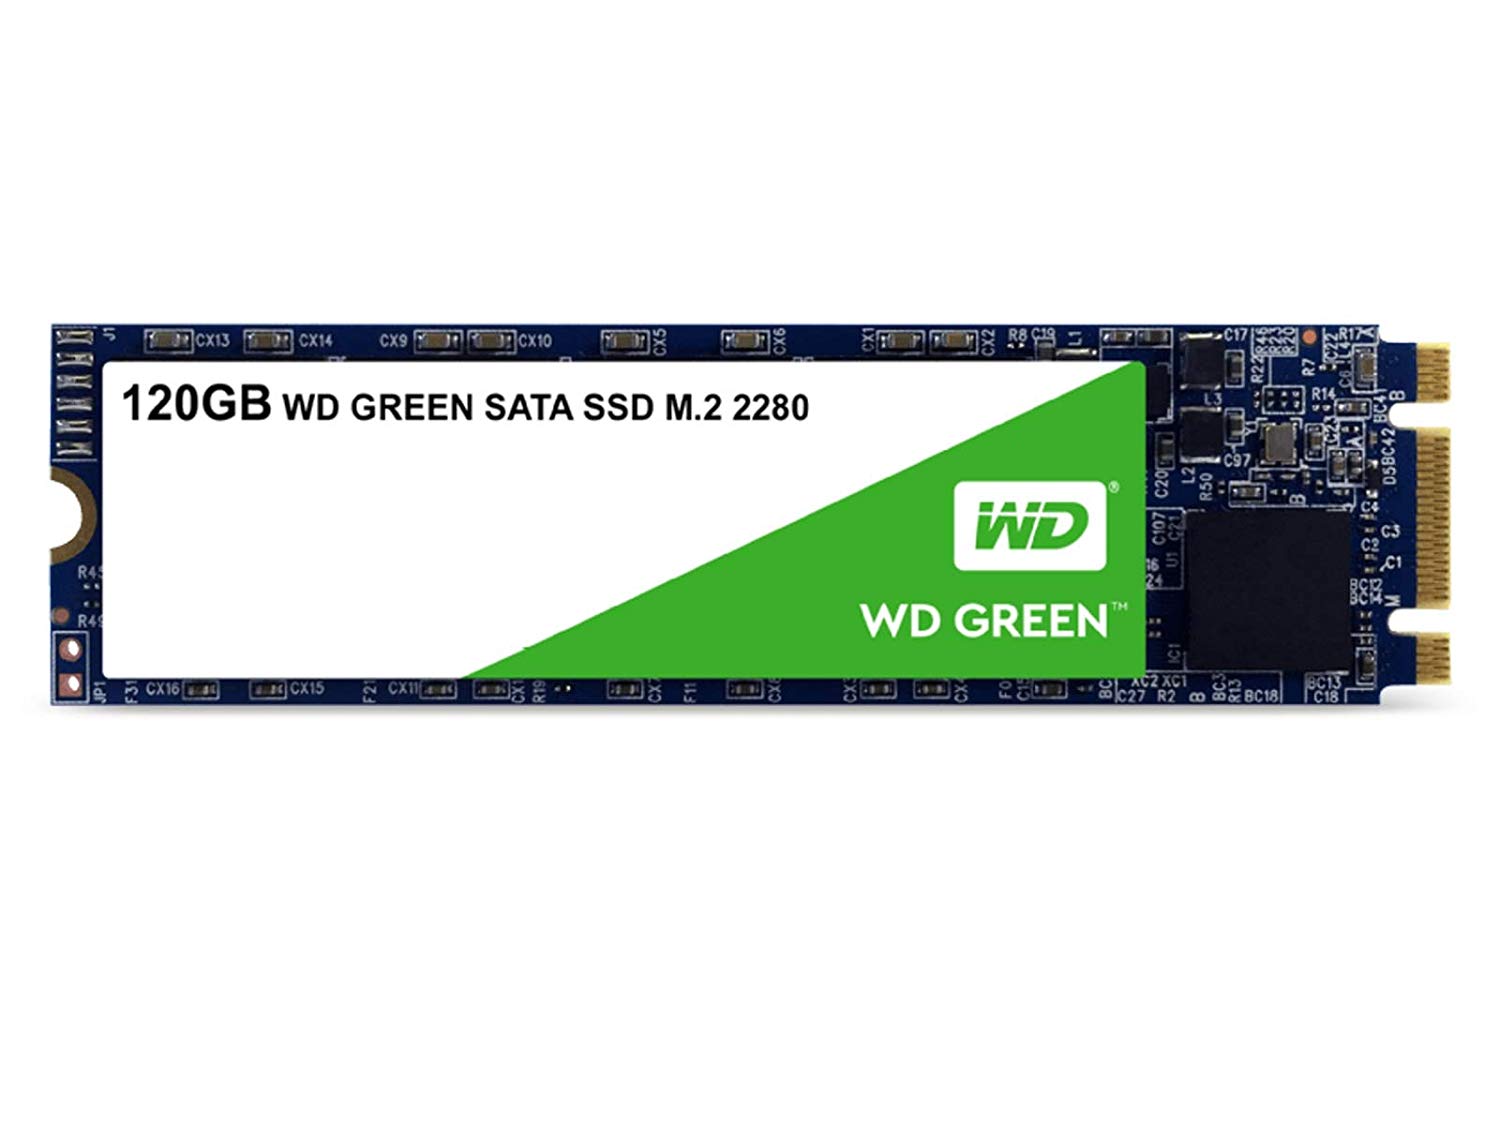 купить Твердотельный накопитель 120GB SSD WD WDS120G2G0B Серия GREEN 3D NAND M.2 2280 R545Mb/s SATA. Для повседневных задач. Твердотельные накопители WD Green — одни из самых экономных накопителей в отрасли. Благодаря низкому потреблению энергии заряда бата в Алматы